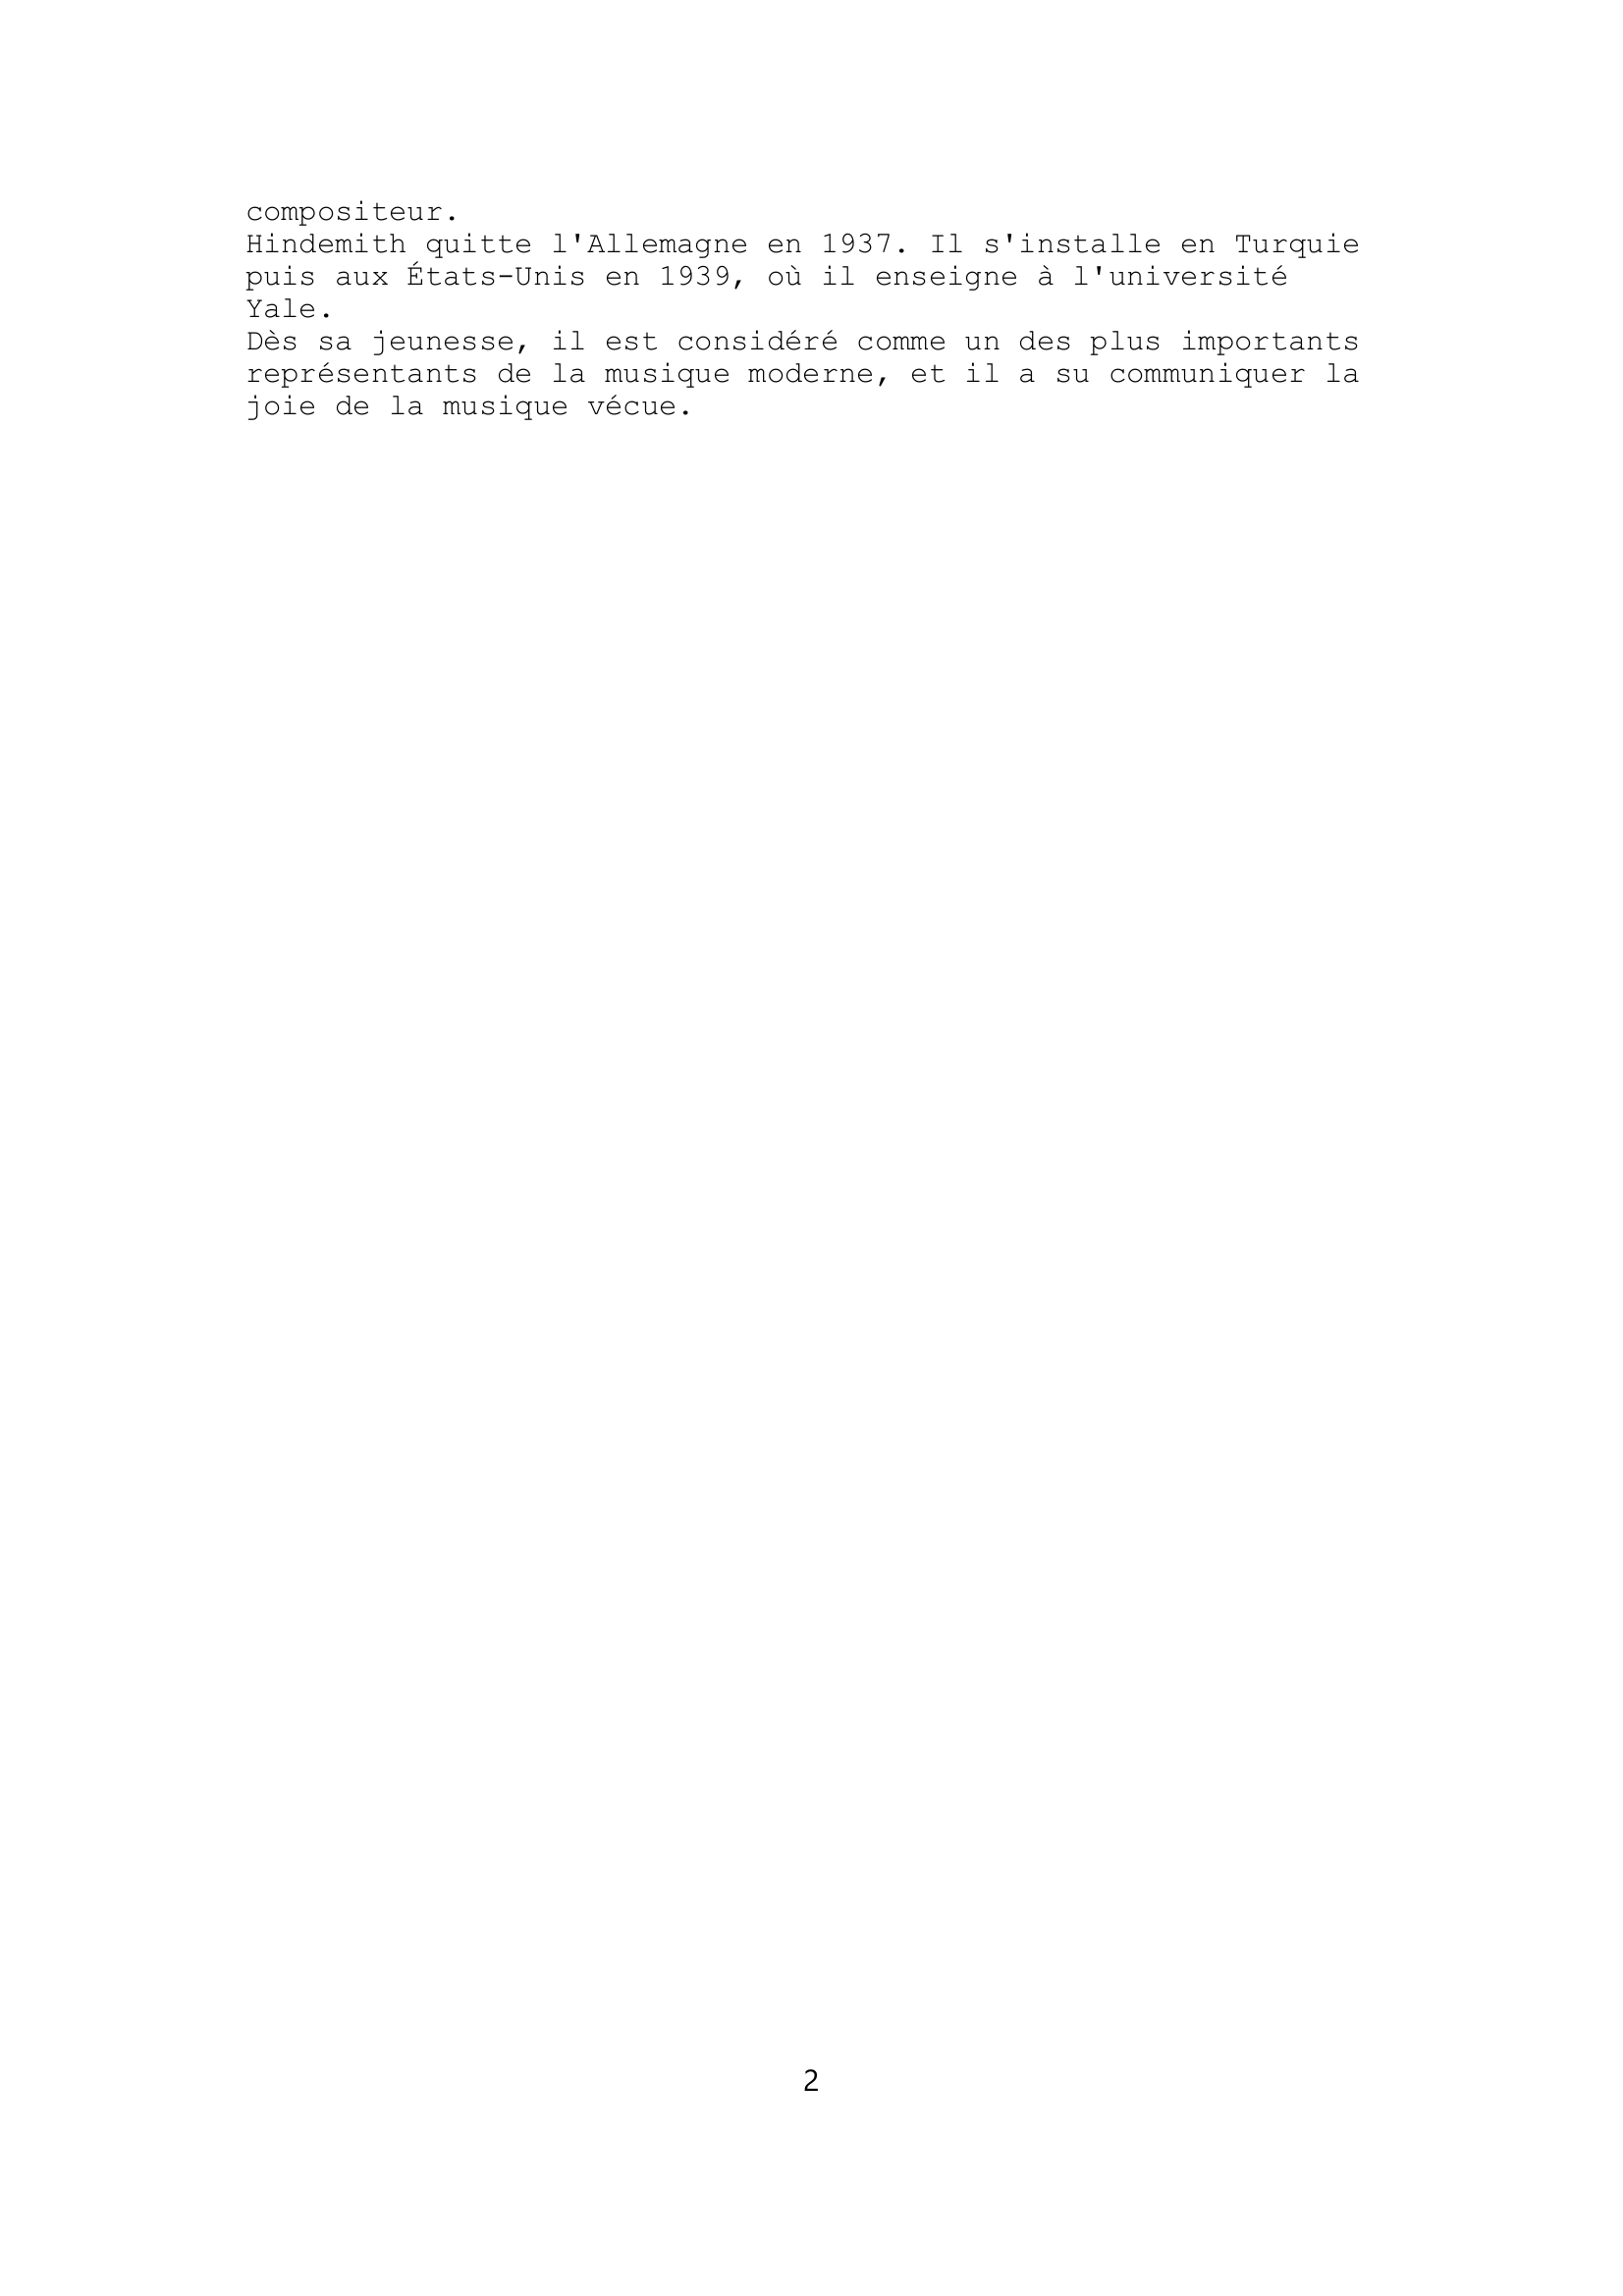 Prévisualisation du document "Mathis le peintre", de Hindemith